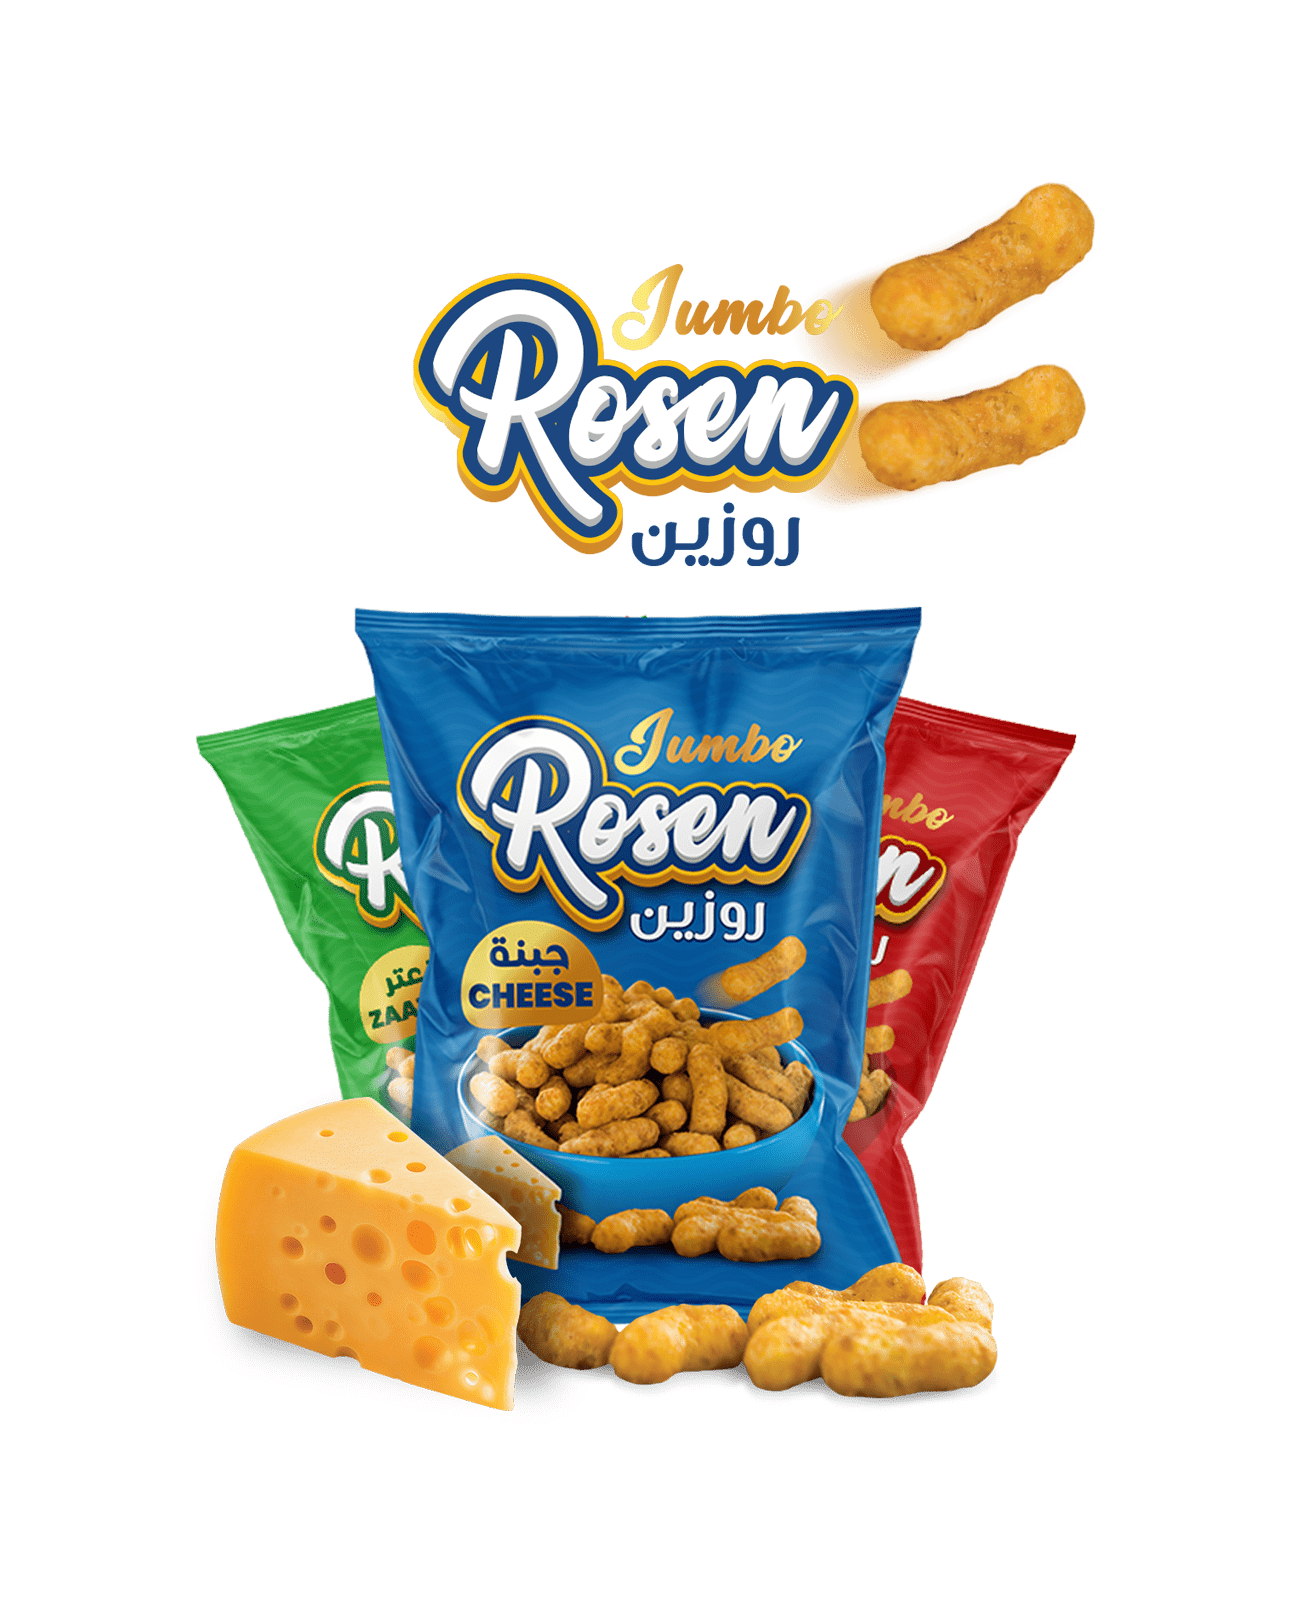 Rosen chips